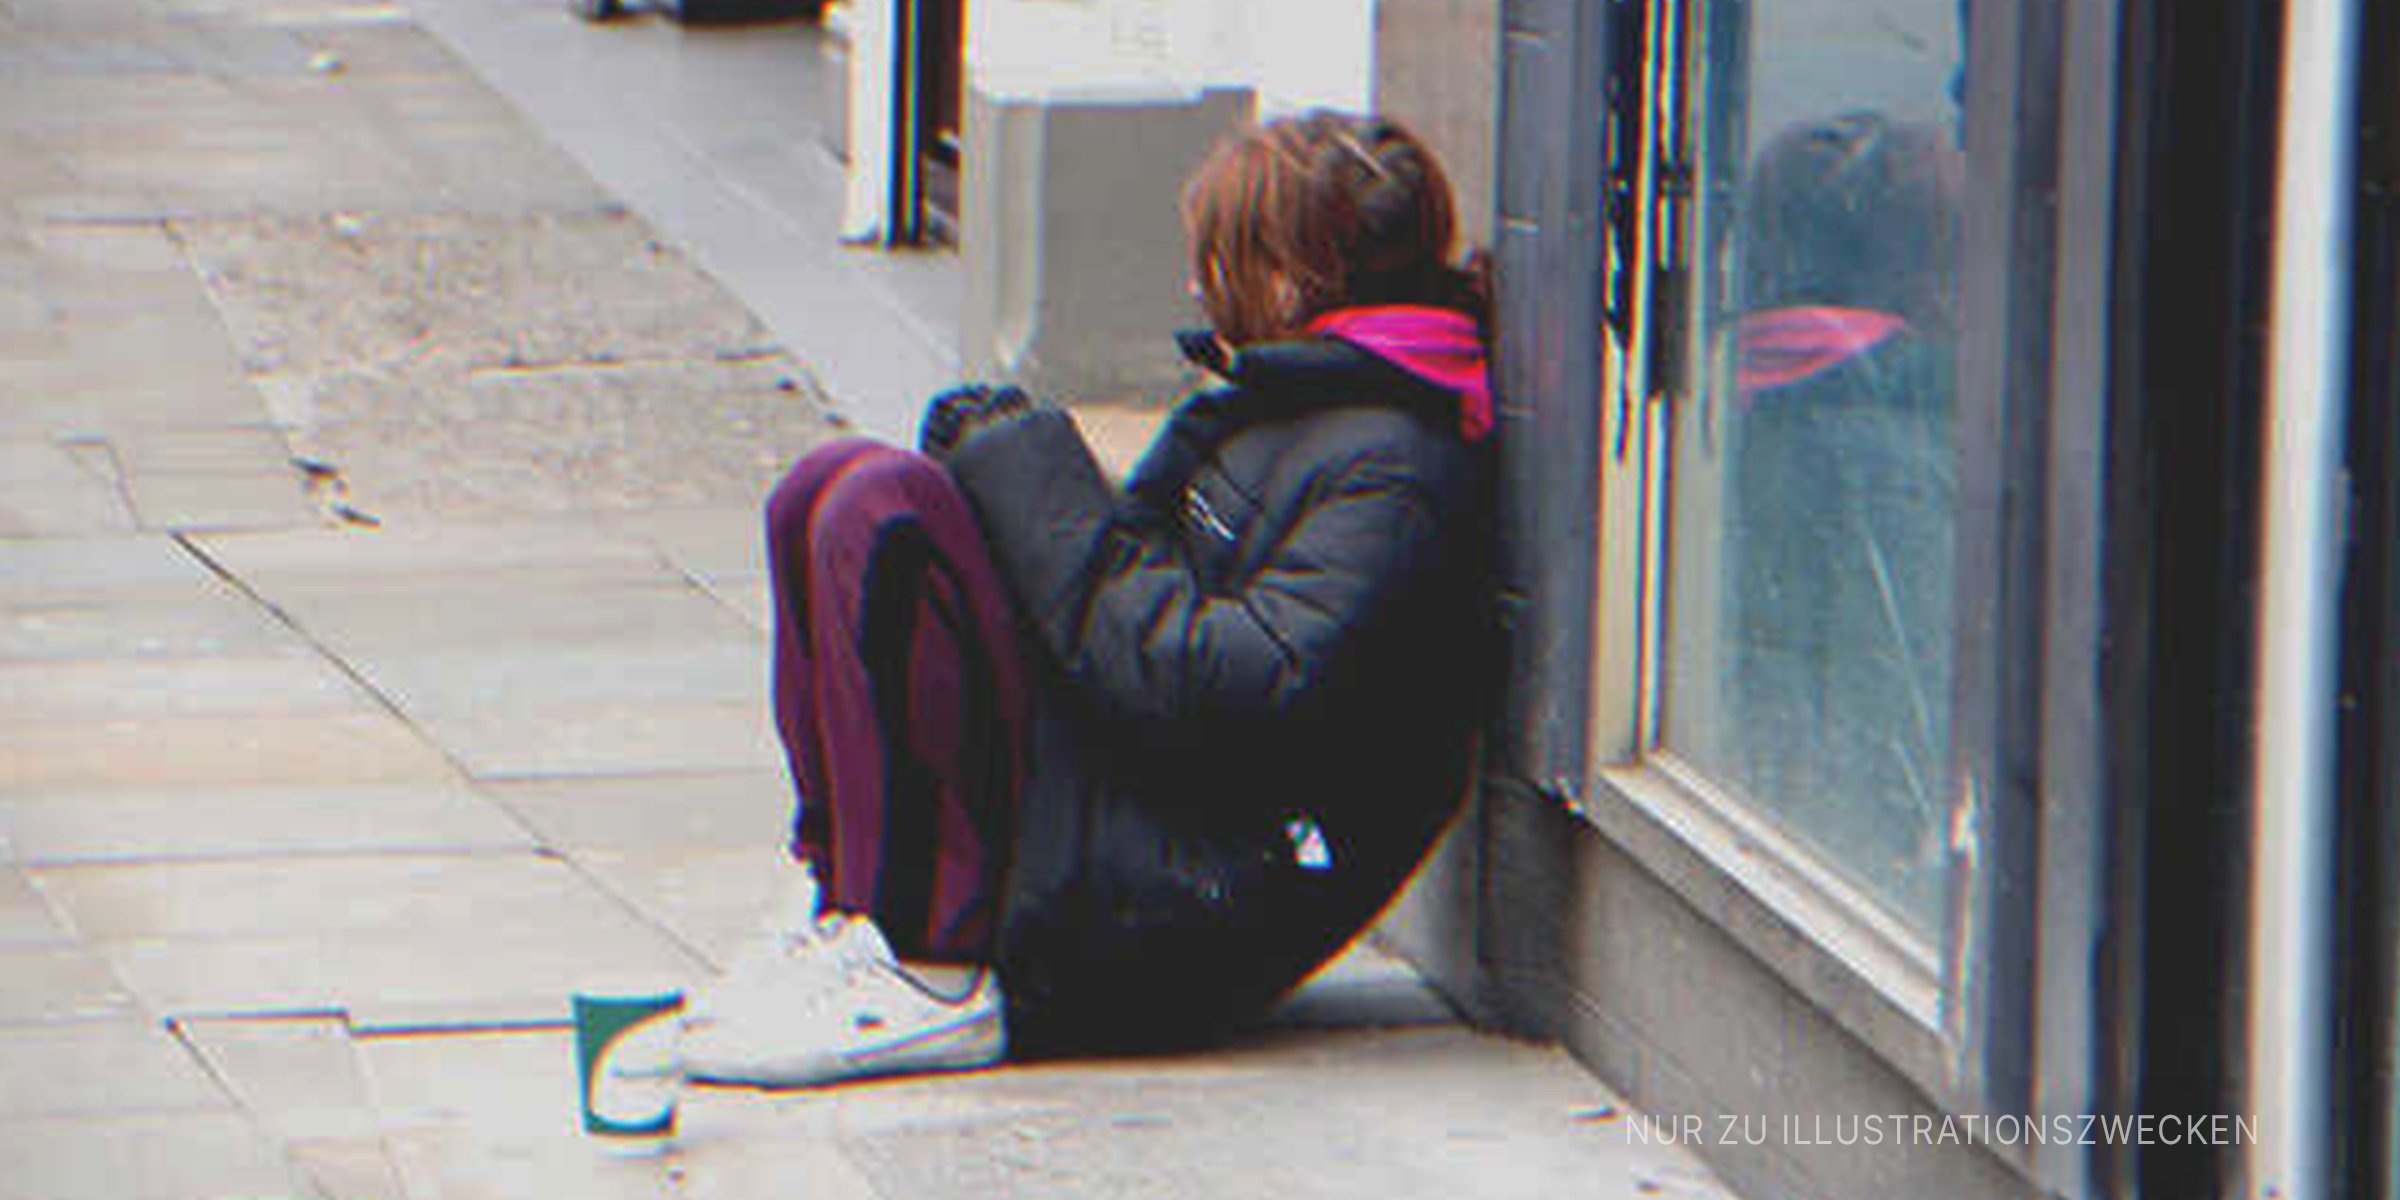 Obdachloses Mädchen sitzt auf der Straße. | Quelle: Shutterstock